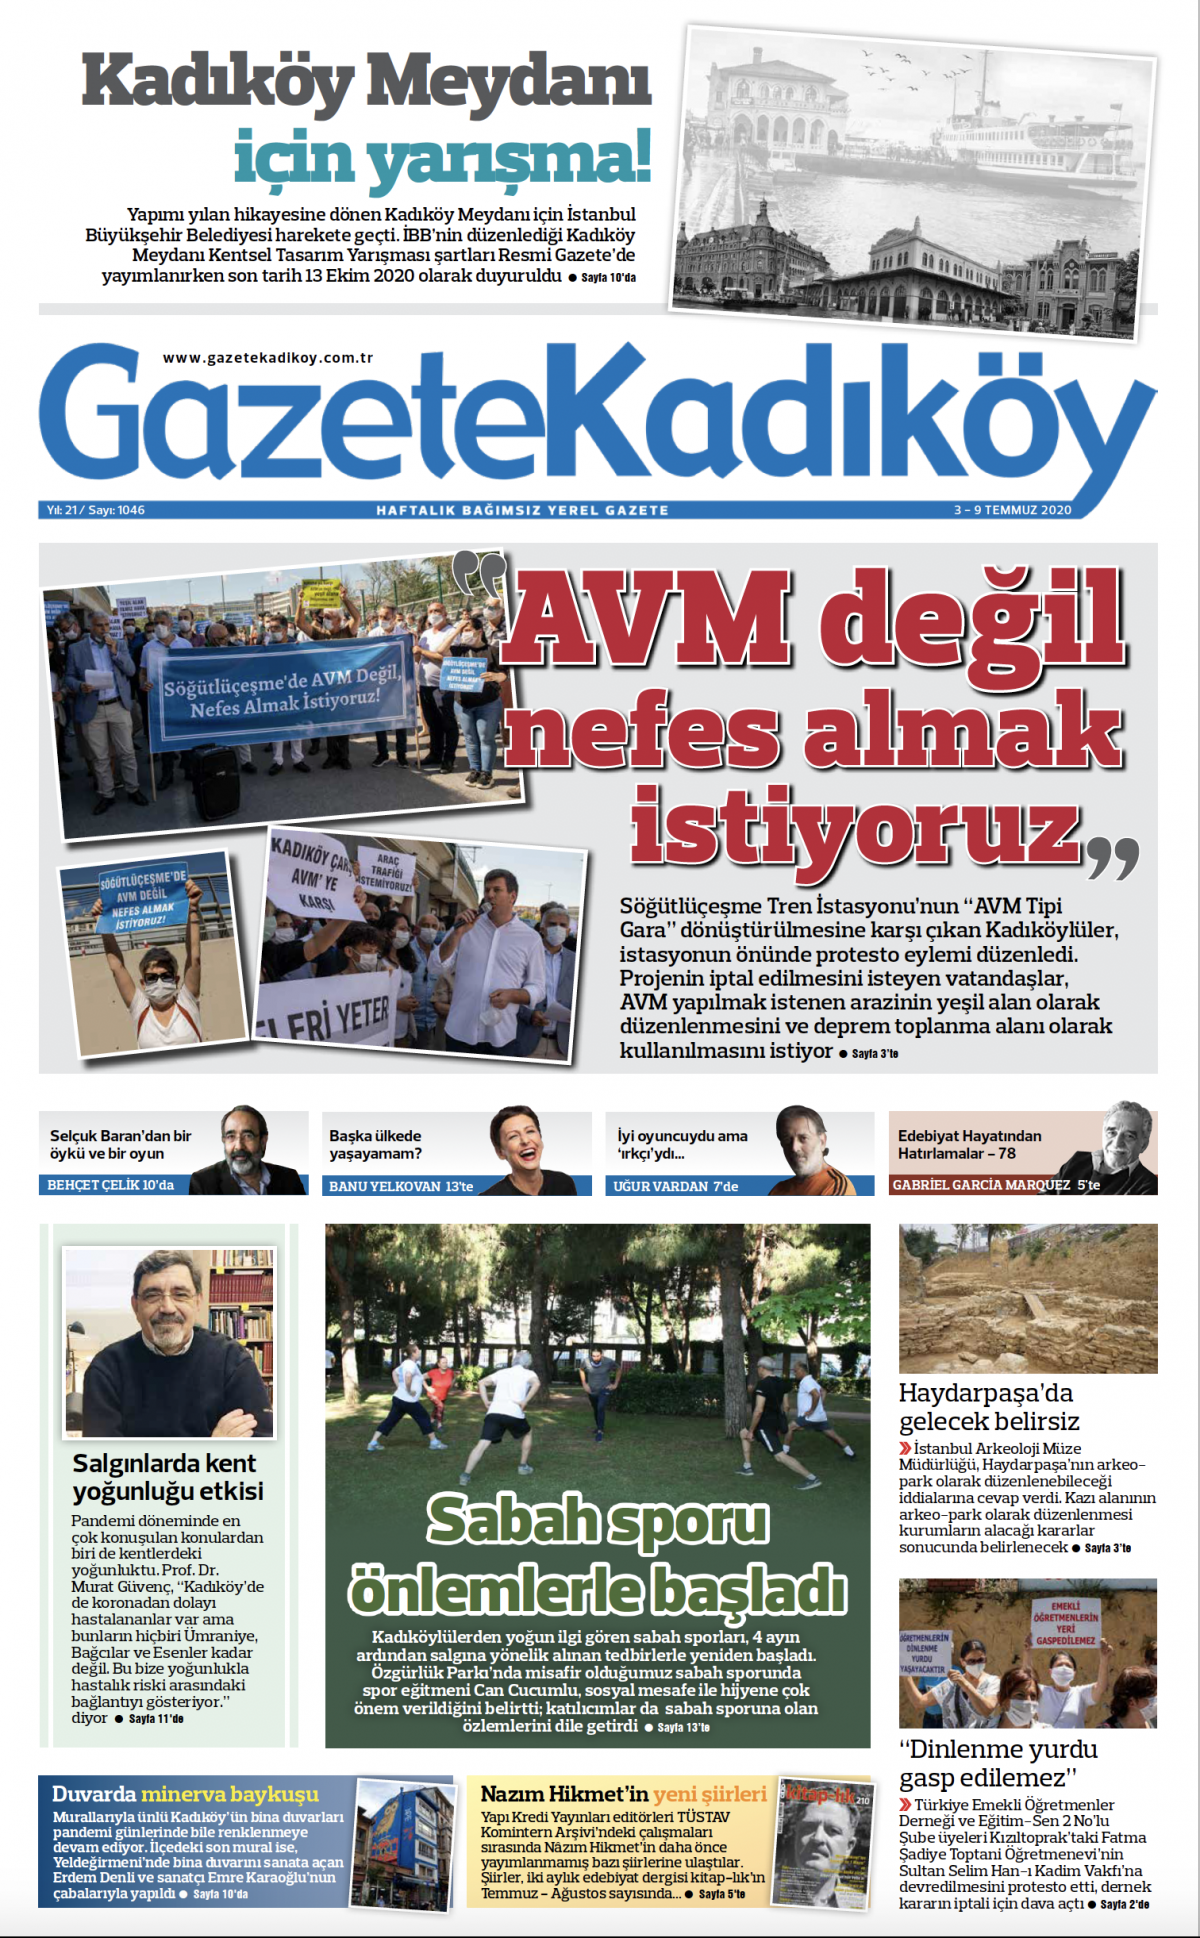 Gazete Kadıköy - 1046. Sayı